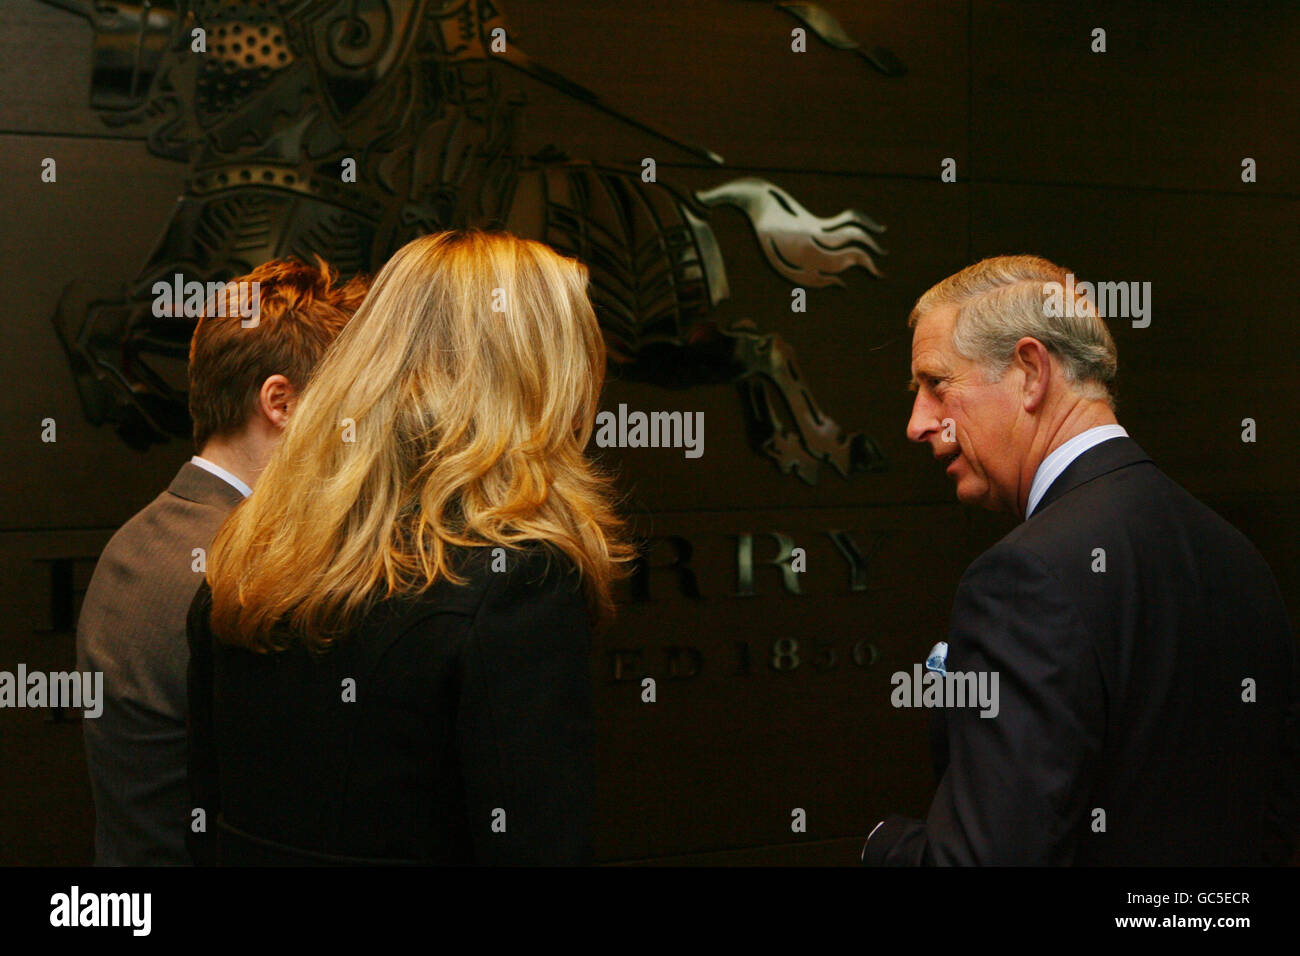 Le Prince de Galles est accueilli par le directeur général de Burberry, Angela Ahrendts, et le directeur de la création, Christopher Bailey, alors qu'il ouvre officiellement le nouveau siège mondial de Burberry à la Horseferry House à Westminster, dans le centre de Londres. Banque D'Images